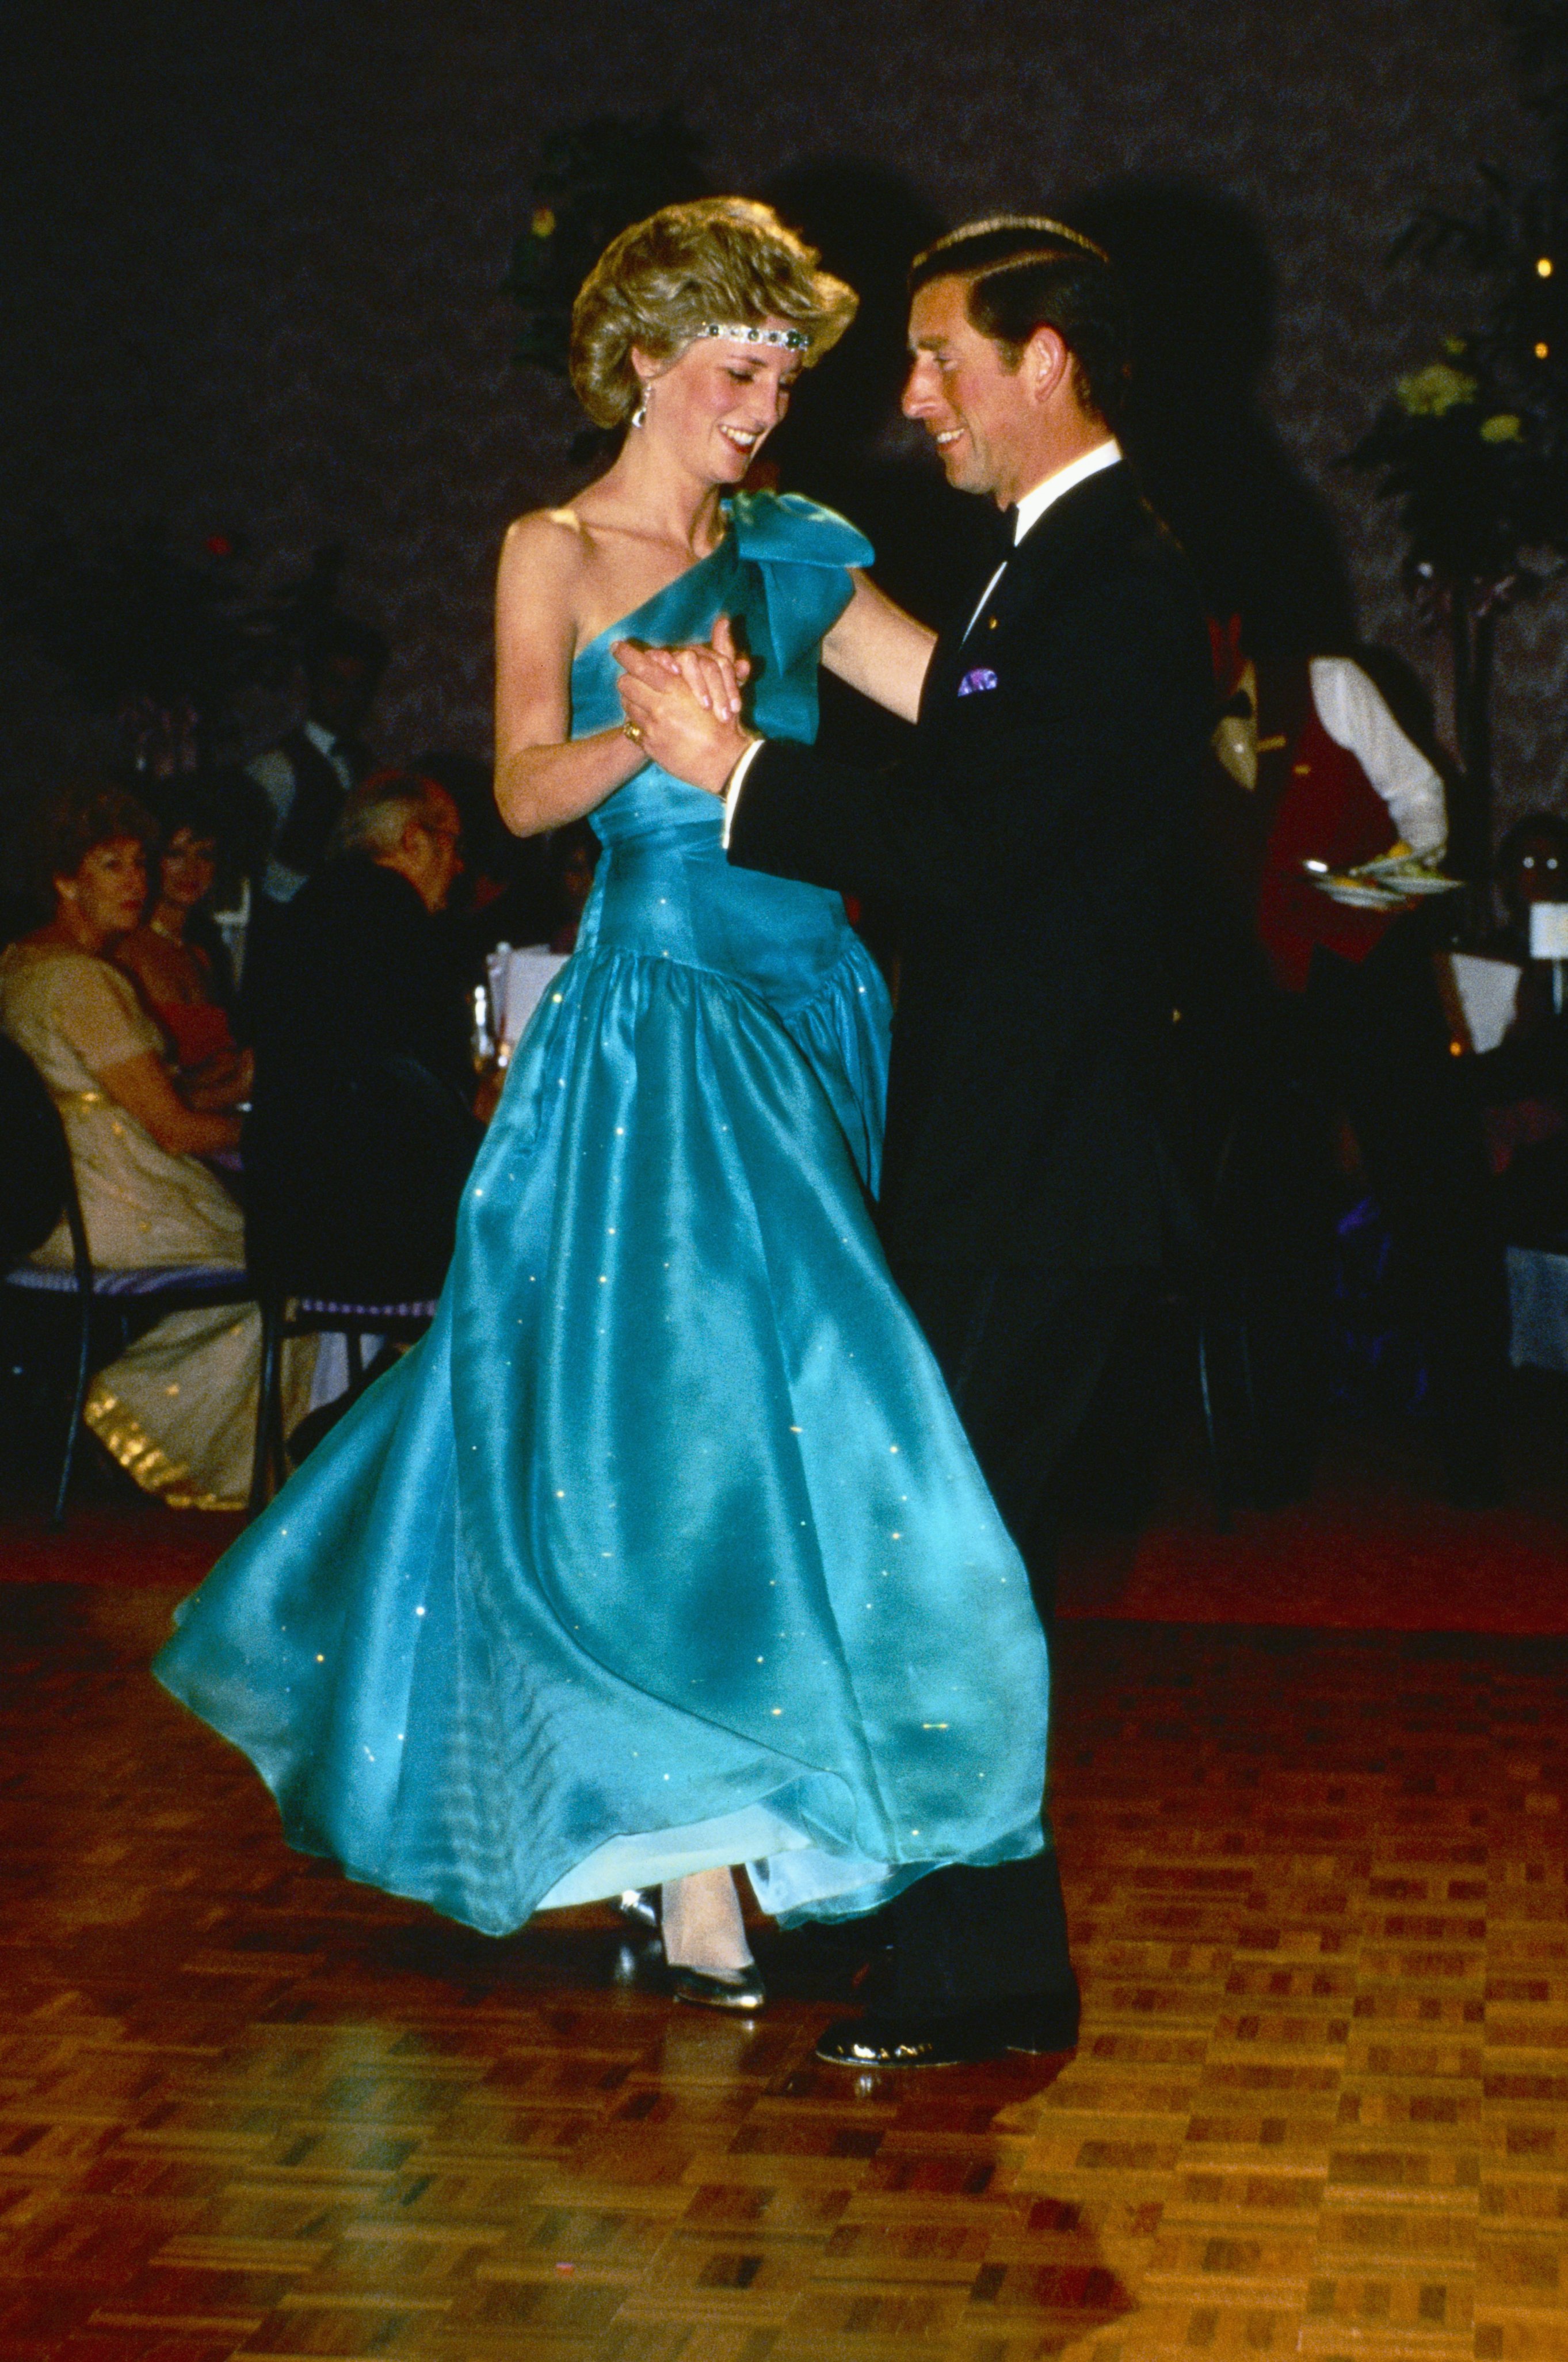 La princesa Diana y el príncipe Charles bailando en un evento formal. | Foto: Getty Images